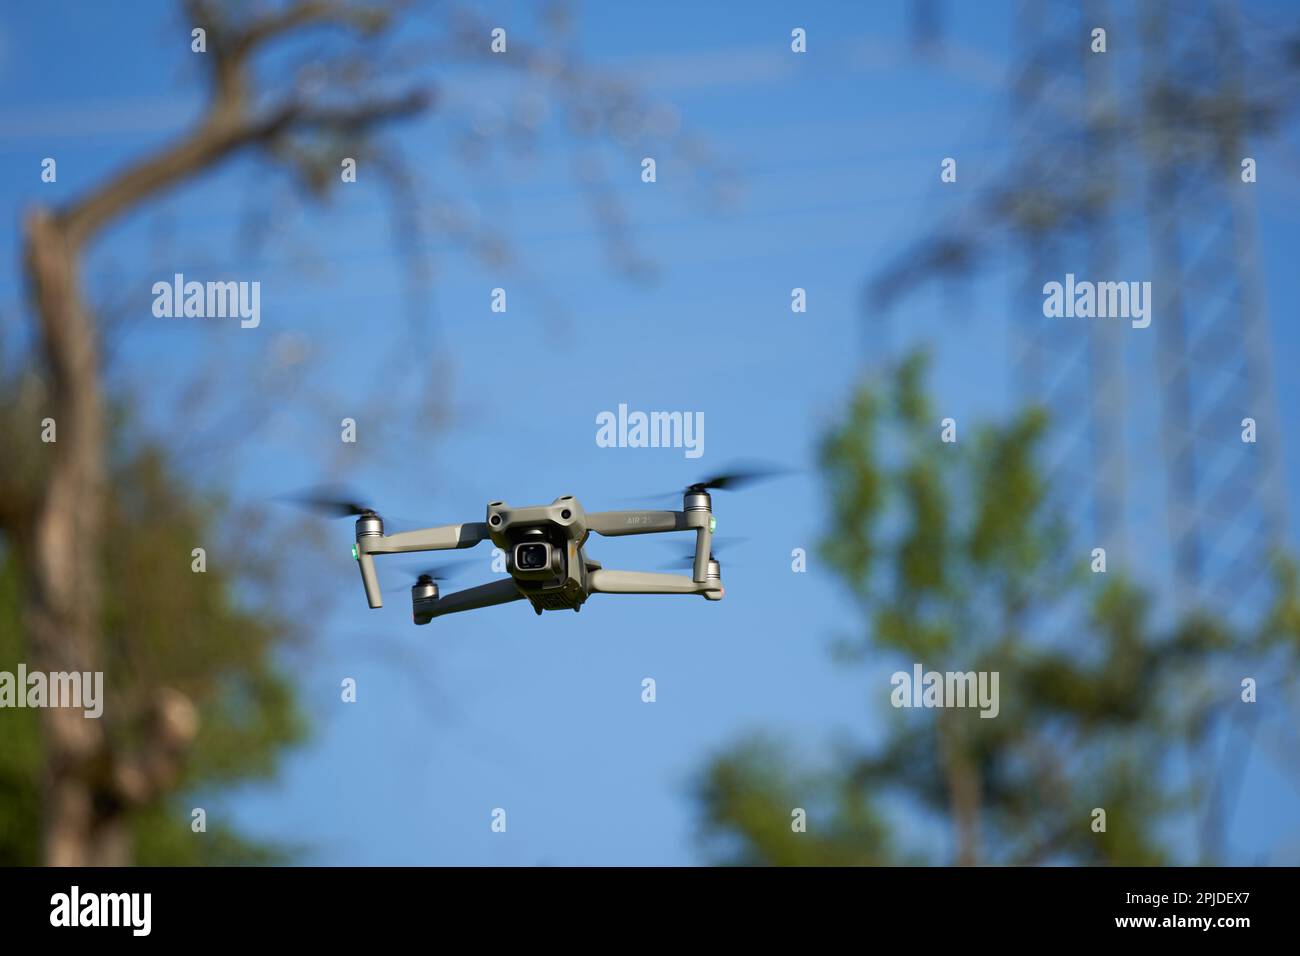 Nürtingen, Deutschland - 29. Mai 2021: Drohne dji Air 2s. Der graue Multicopter mit vielen Sicherheitsfunktionen bietet eine gute Foto- und Videoqualität. Bäume und Stockfoto